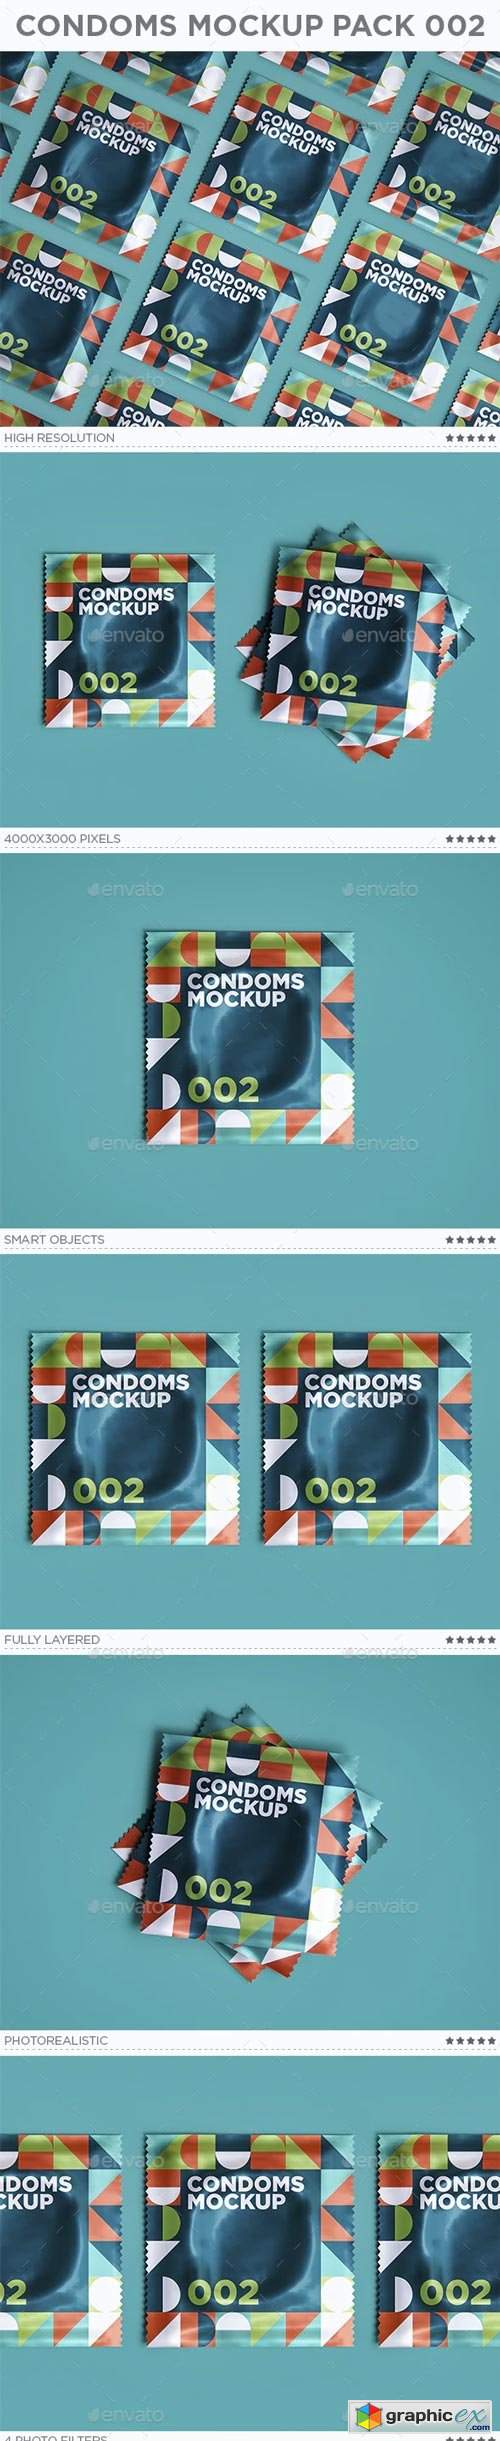 Condoms Mockup Pack 002 